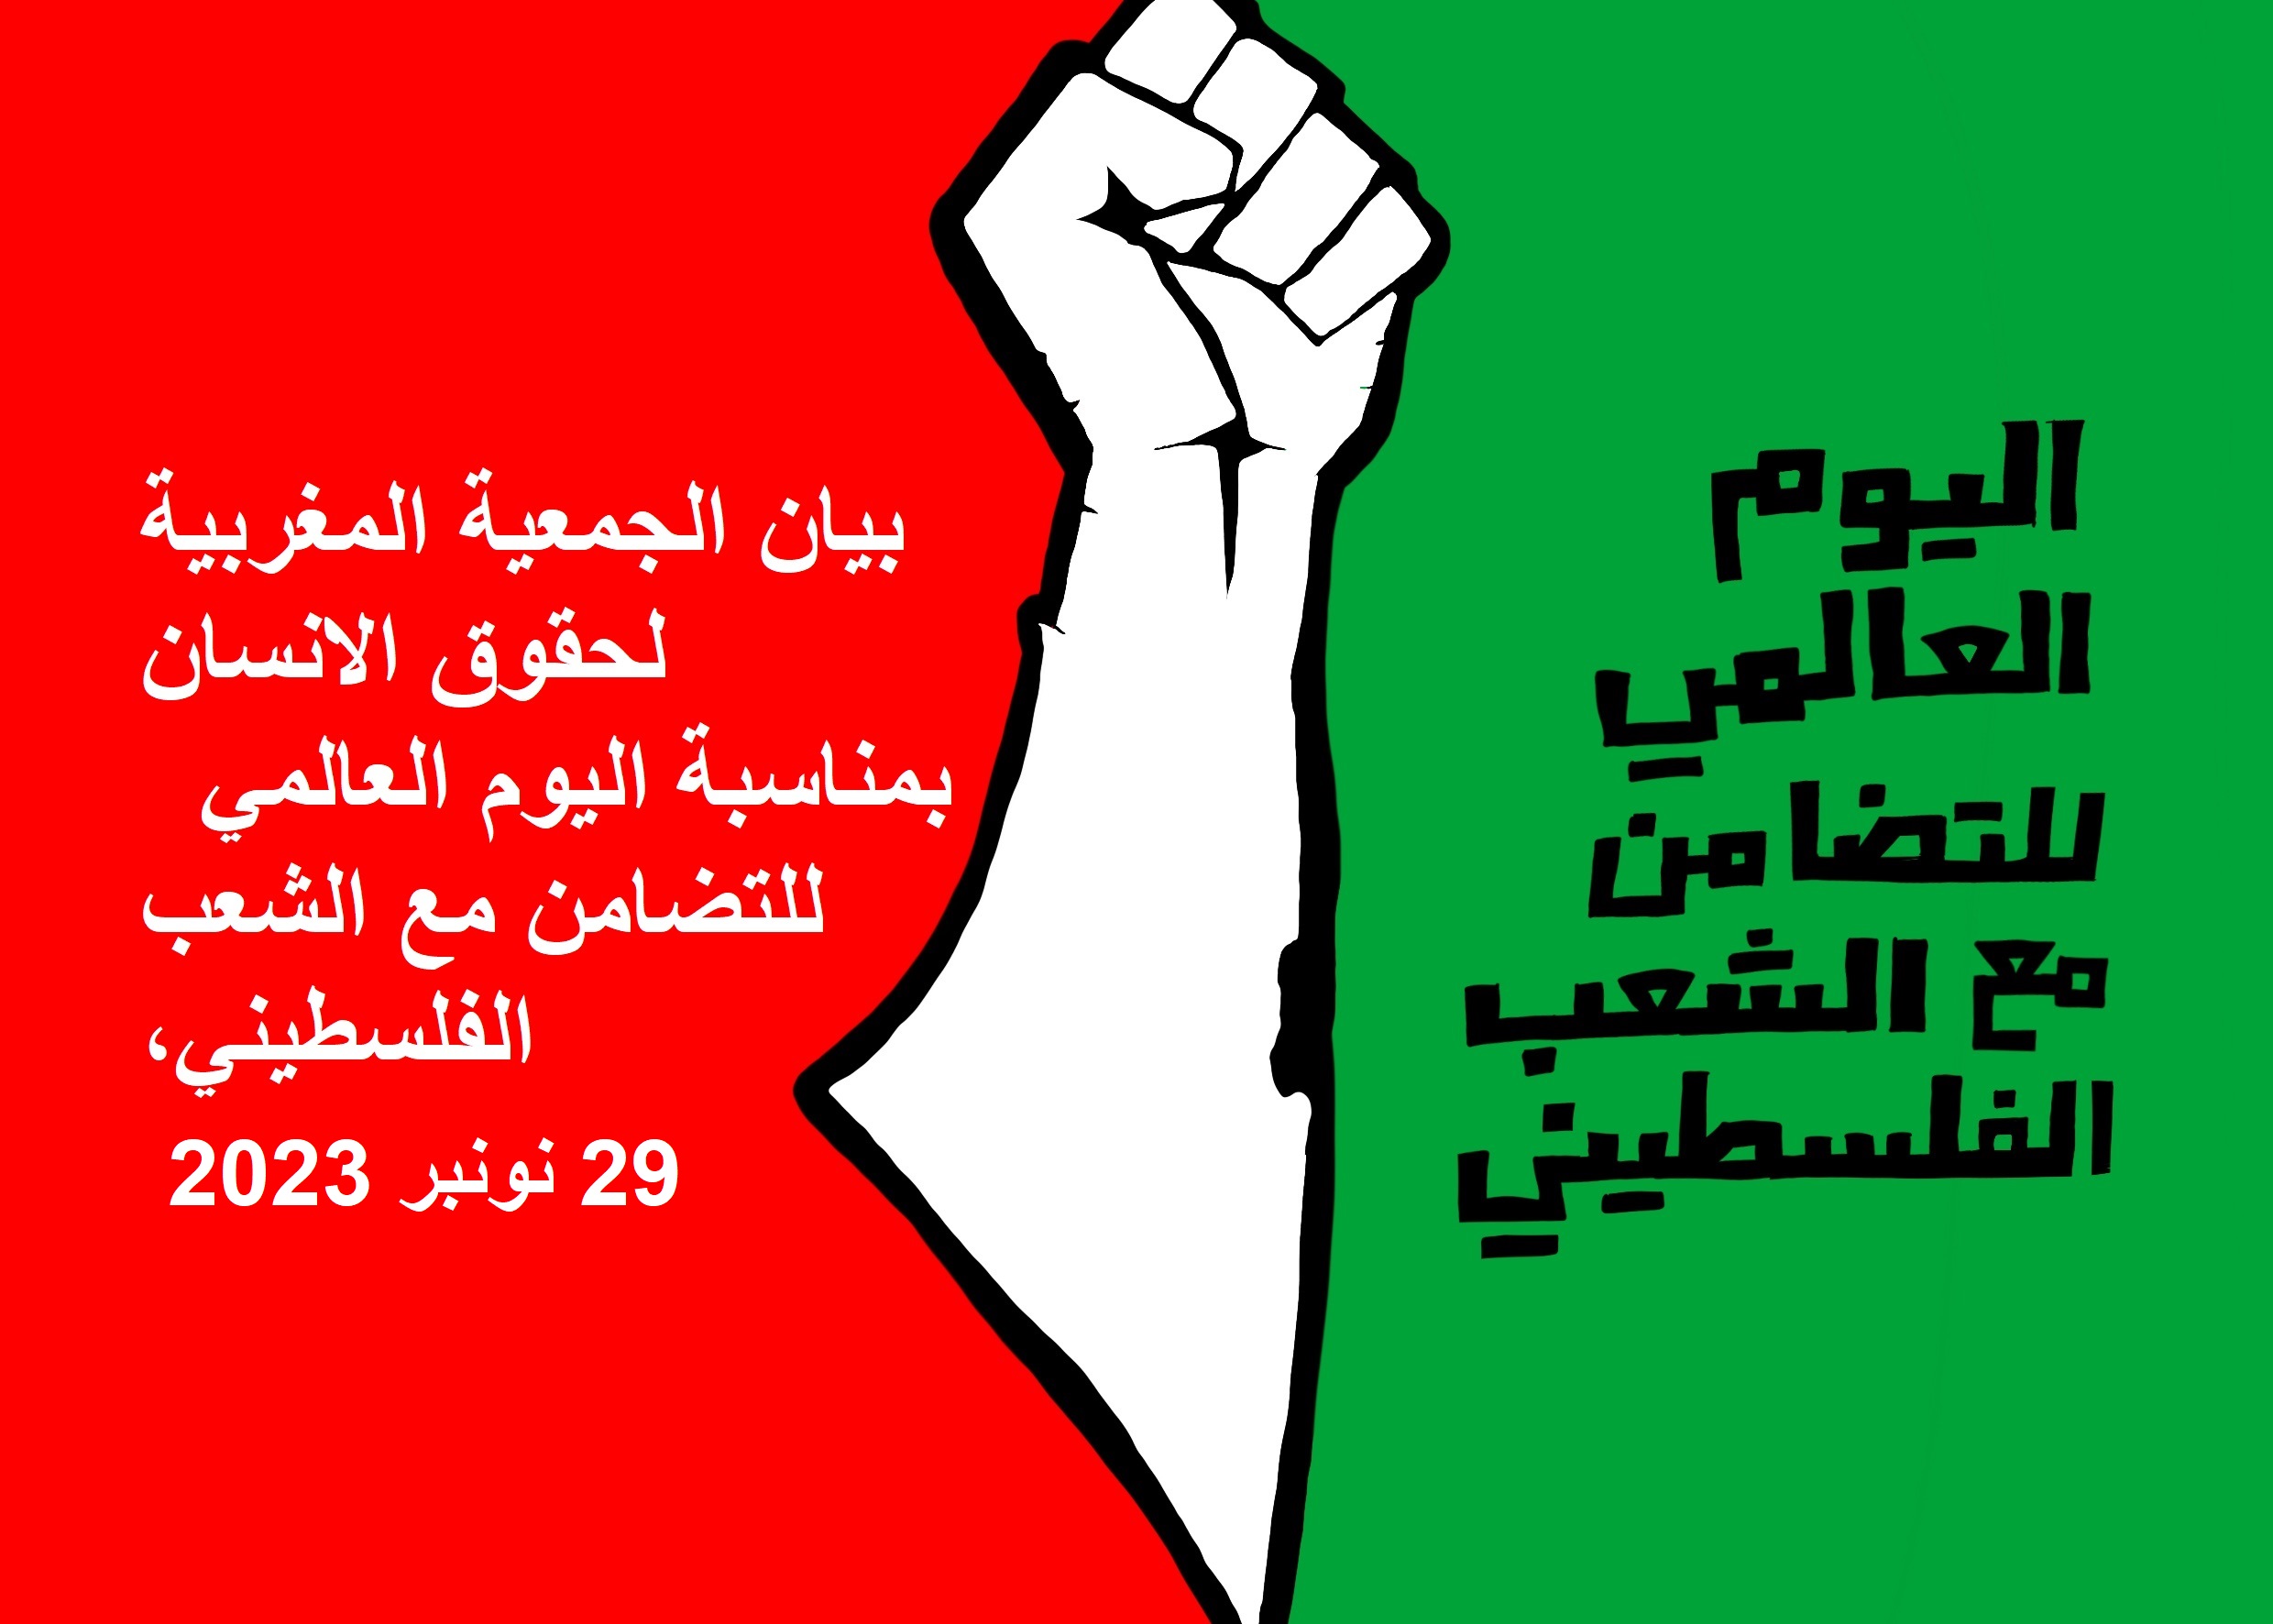 بيان حول اليوم العالمي للتضامن مع الشعب الفلسطيني 29 نونبر 2023